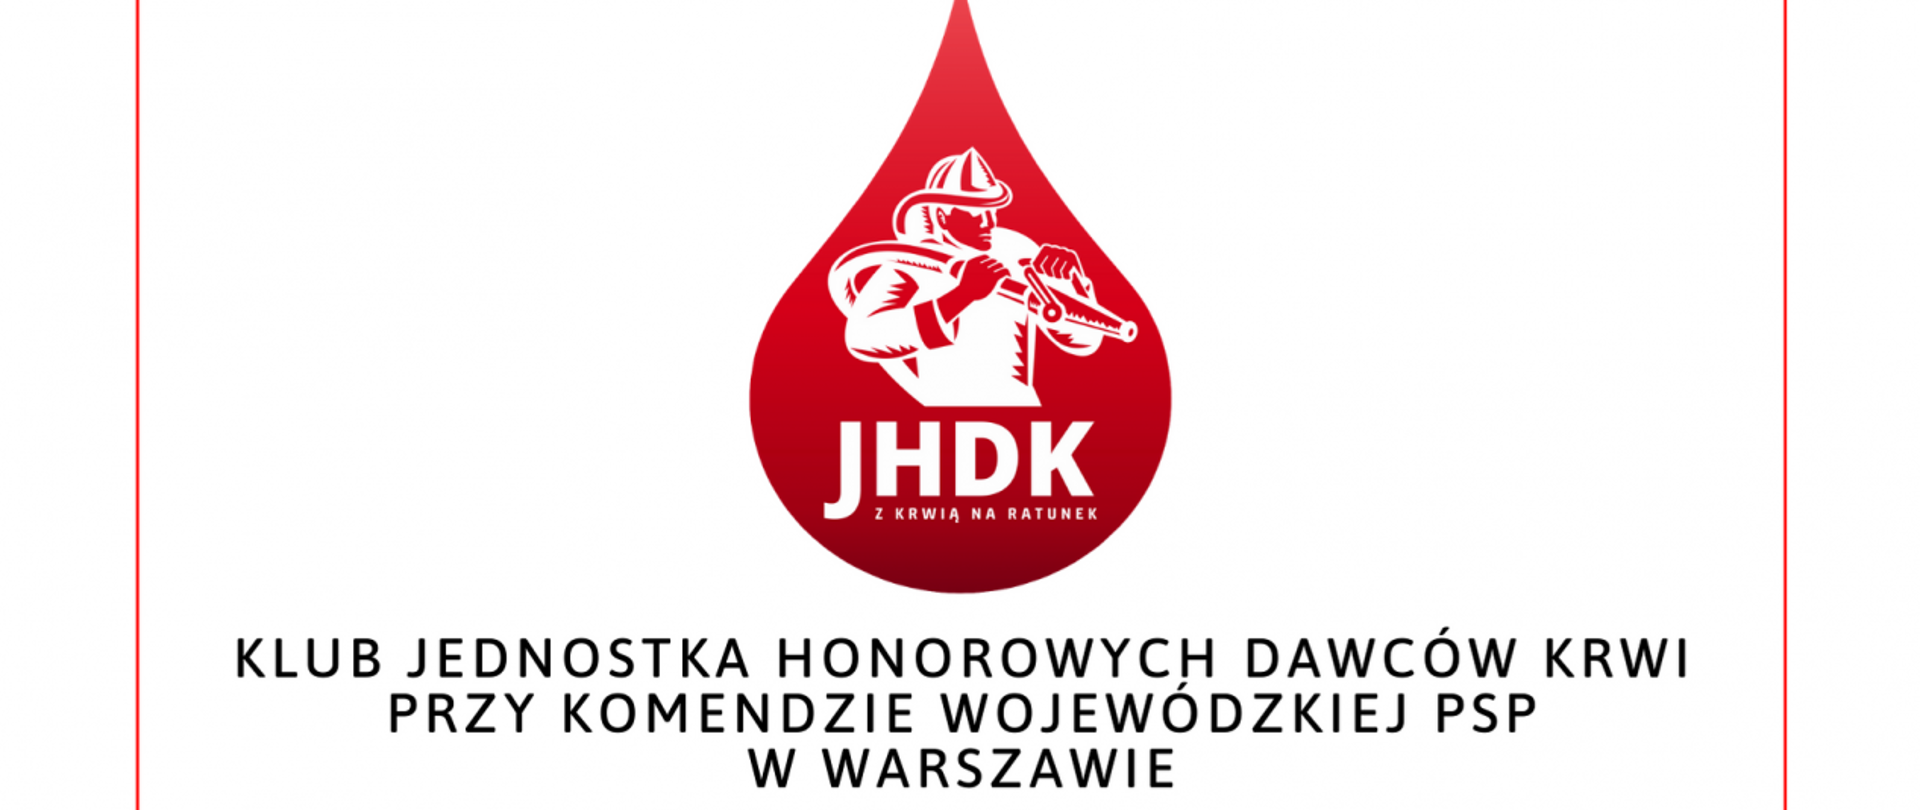 Tło z logotypem w kształcie kropli krwi oraz napisem Klub Jednostka Honorowych Dawców Krwi Przy Komendzie Wojewódzkiej PSP w Warszawie